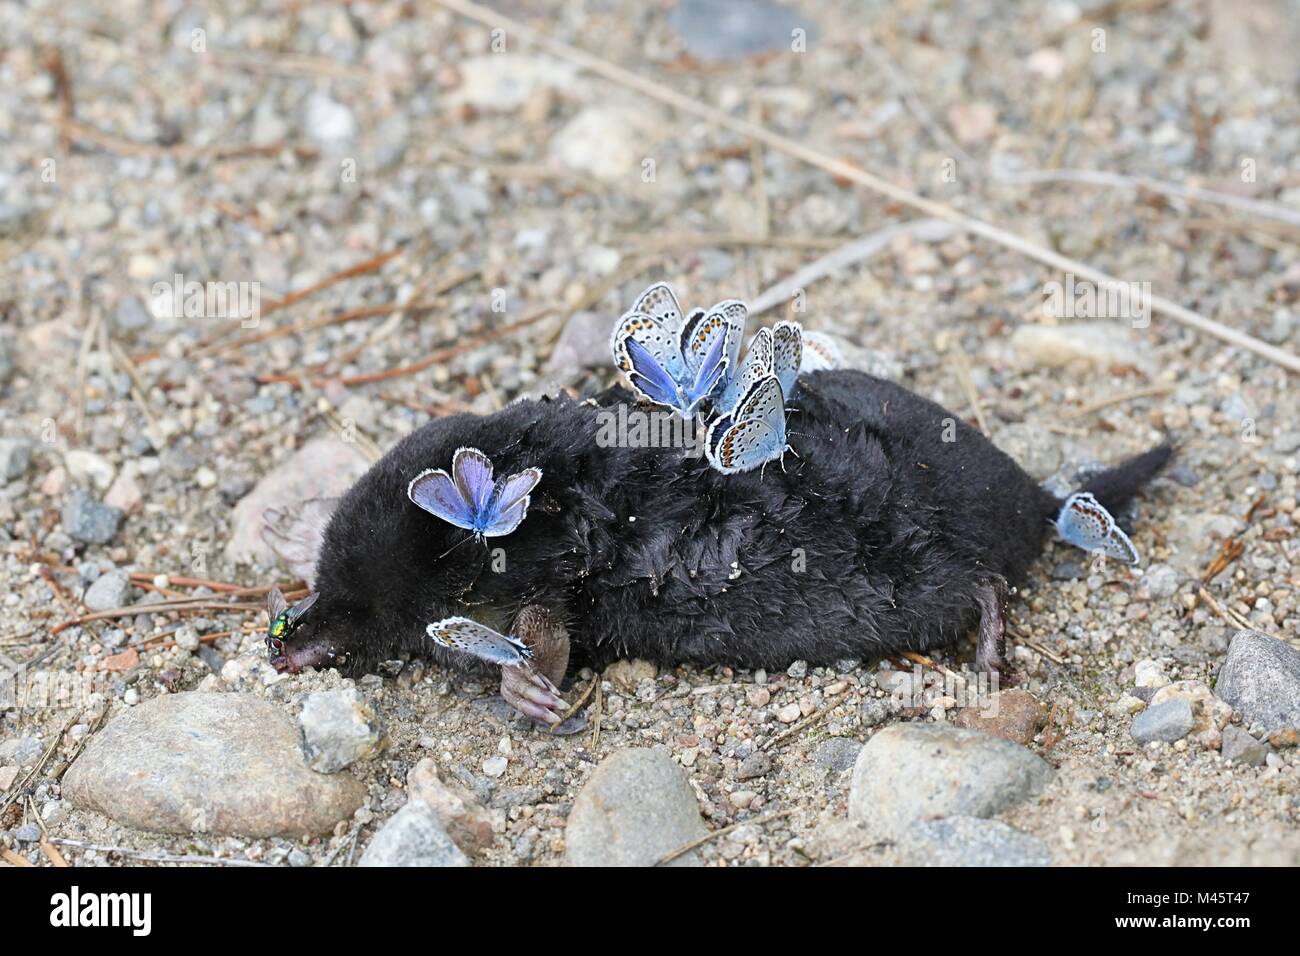 Argento-blu chiodati farfalle, Plebejus argus, nella ricerca di sali e minerali su una carcassa di una mole di morti. Foto Stock